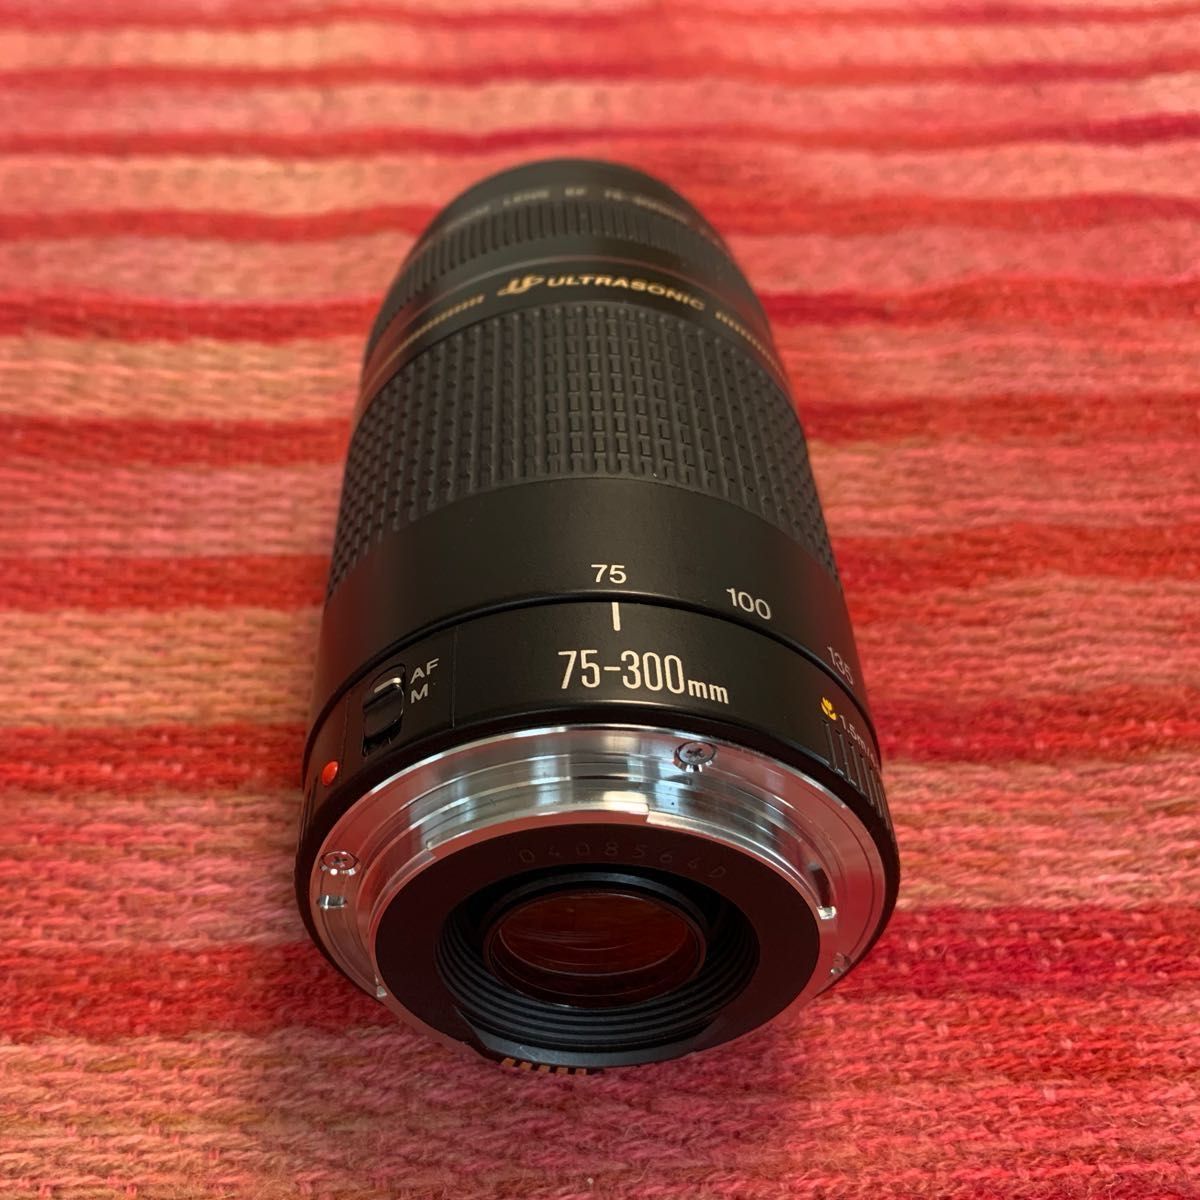 Canon EF 75-300mm F4-5.6 III USM 望遠レンズ - レンズ(ズーム)